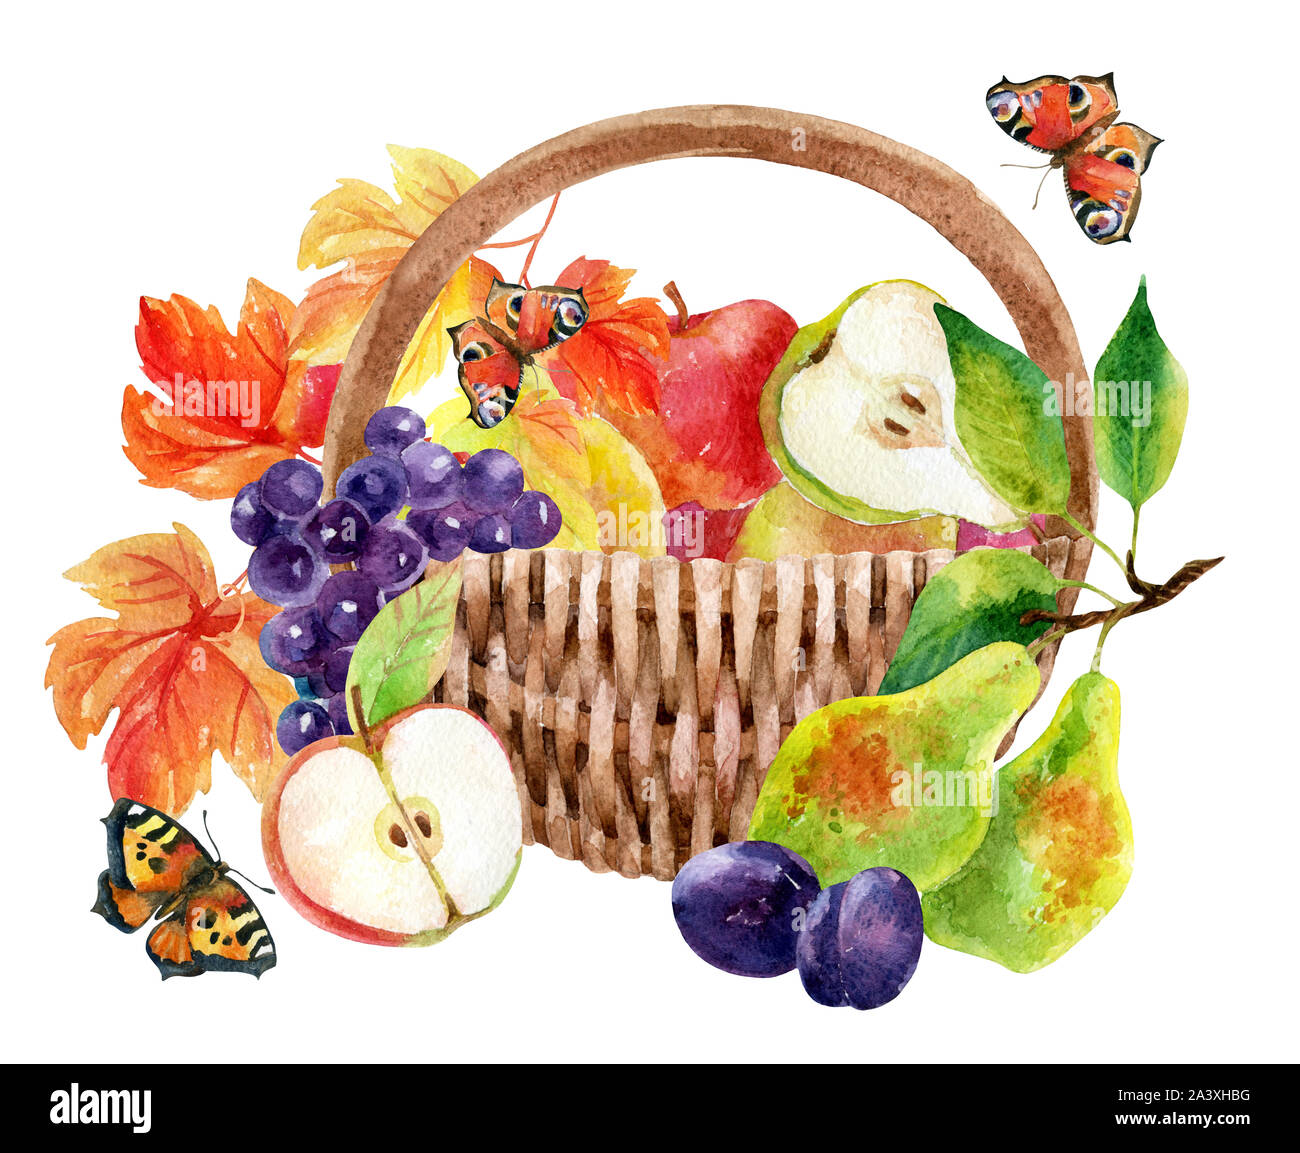 Panier de fruits et de baies. Aquarelle raisins, pommes, poires et prunes. La main peinte illustration isolé sur fond blanc Banque D'Images